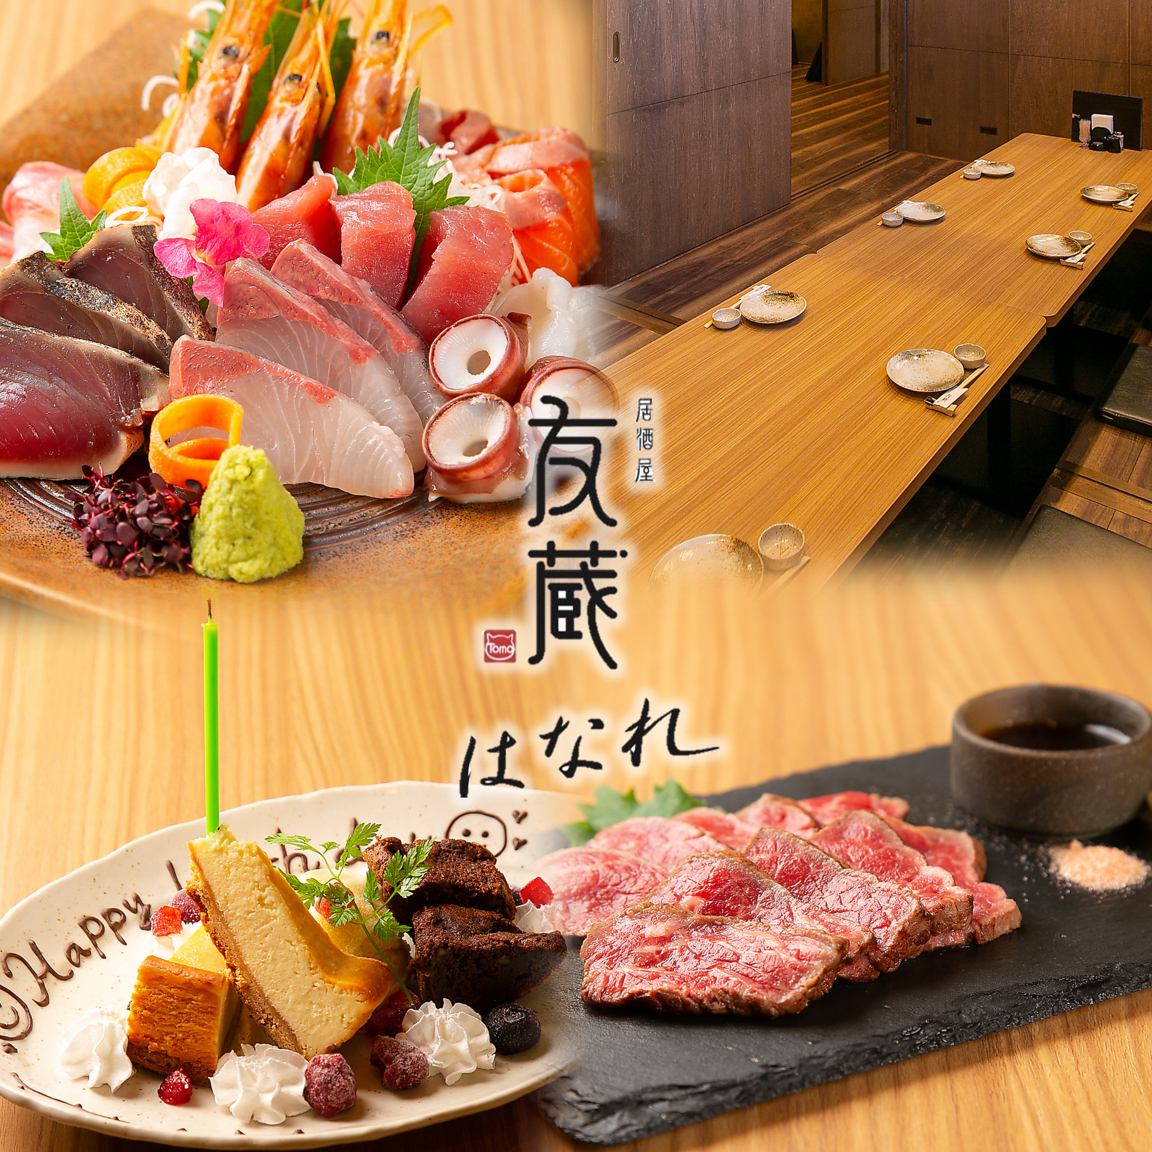 在包厢内，您可以充分享用各种酒精饮料以及使用新鲜的鱼、伊贺牛肉和时令食材制成的特色菜肴。